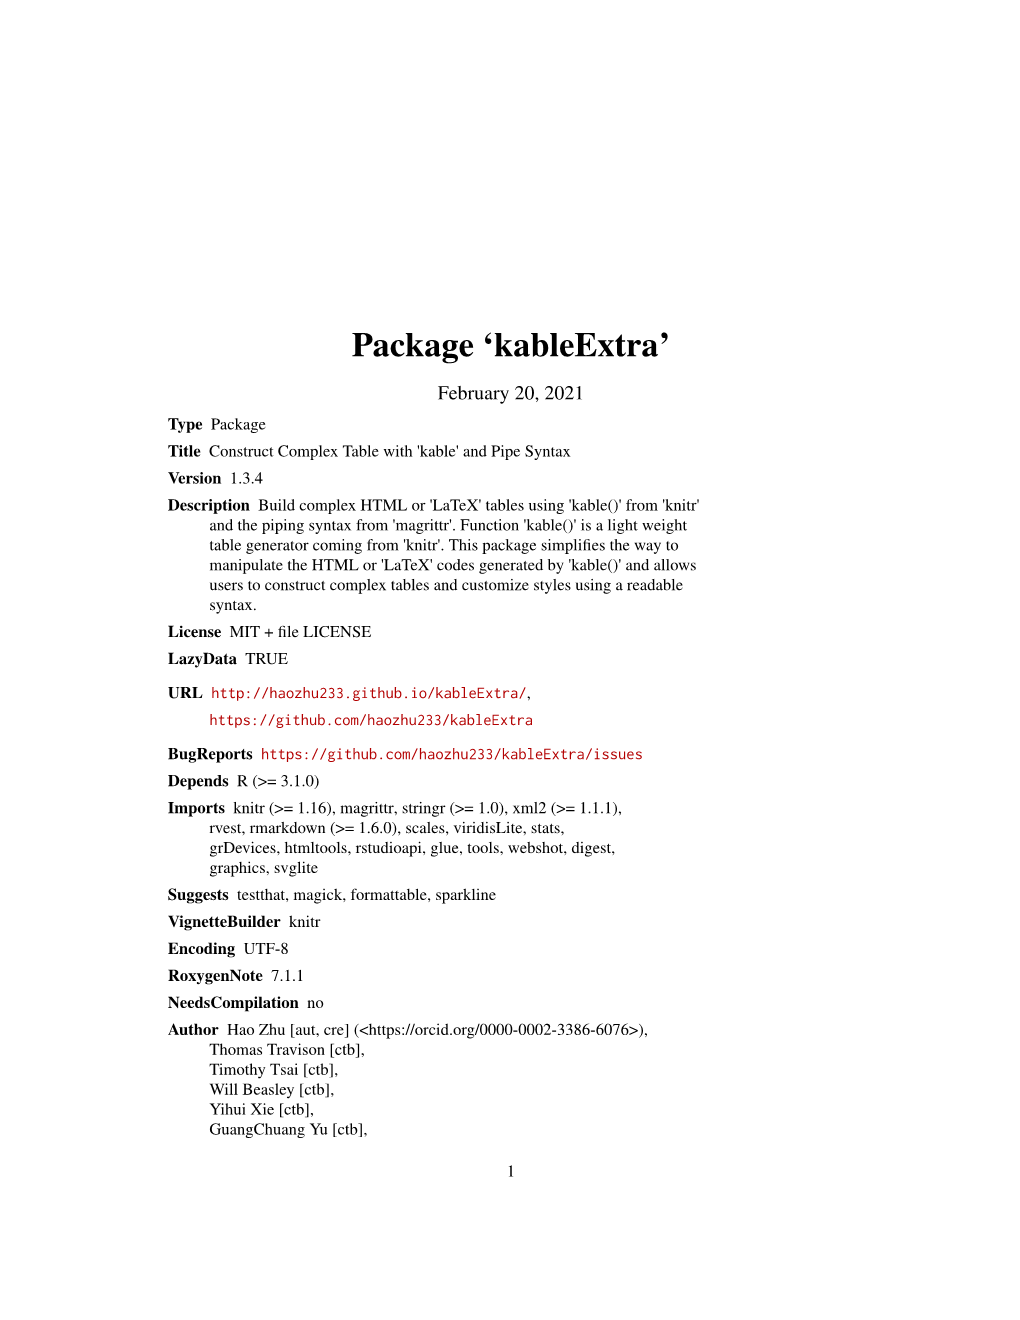 Package 'Kableextra'